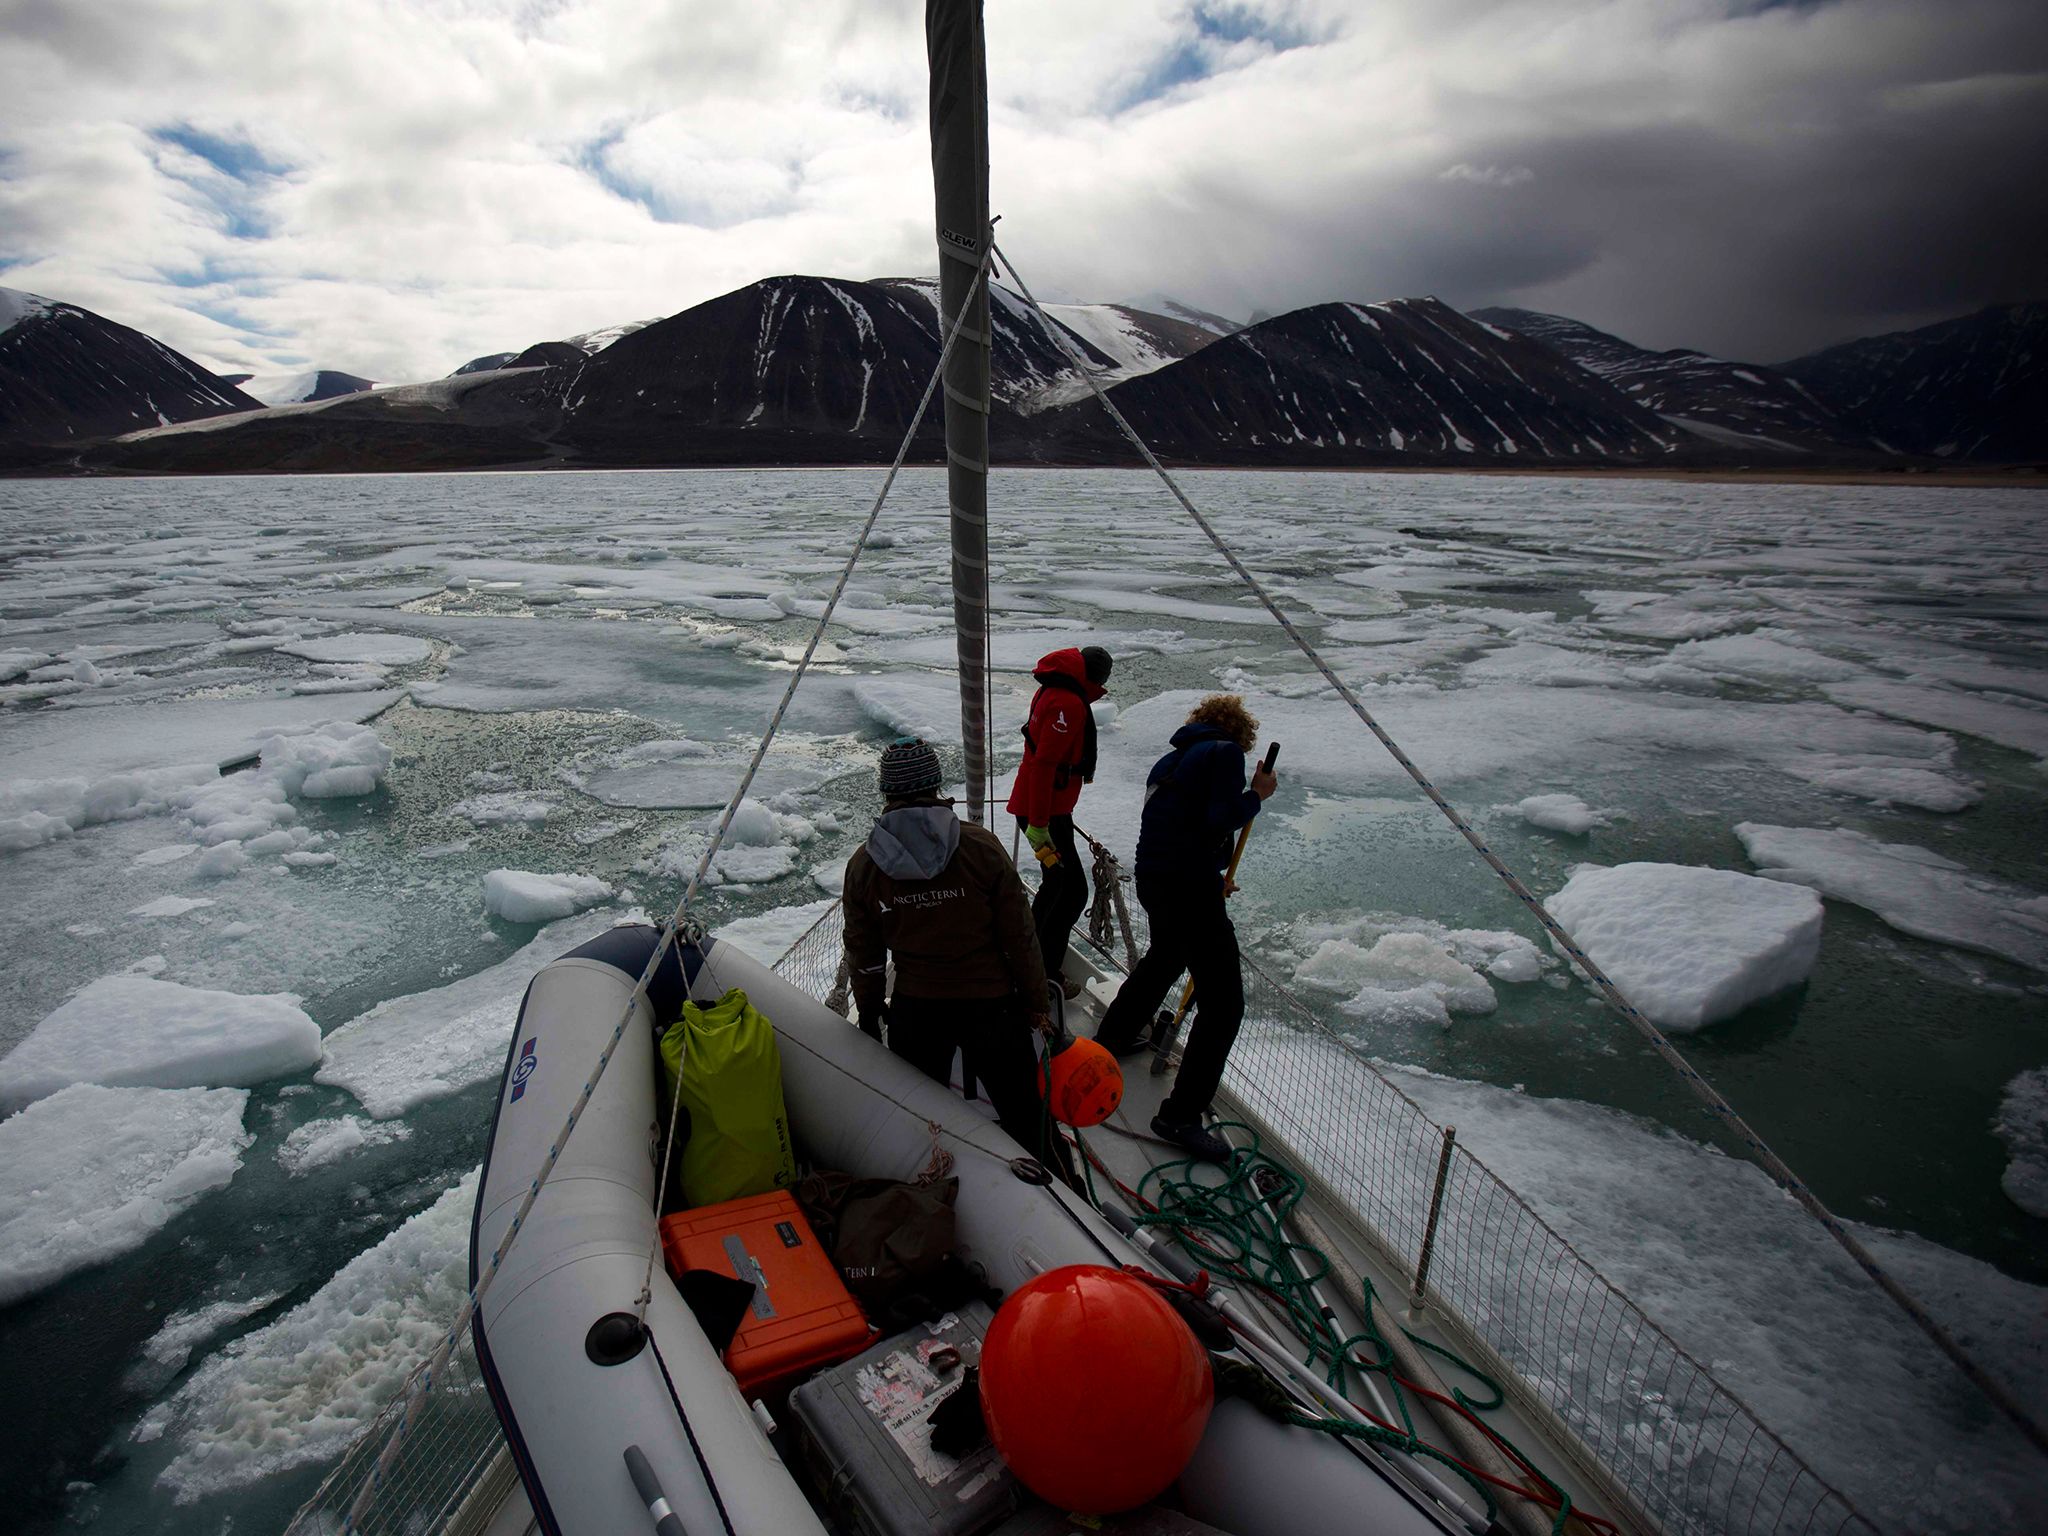 فريق عمل الفيلم يقوم بدفع الكتل الجليدية. هذه الصورة... [Photo of the day - ديسمبر 2014]